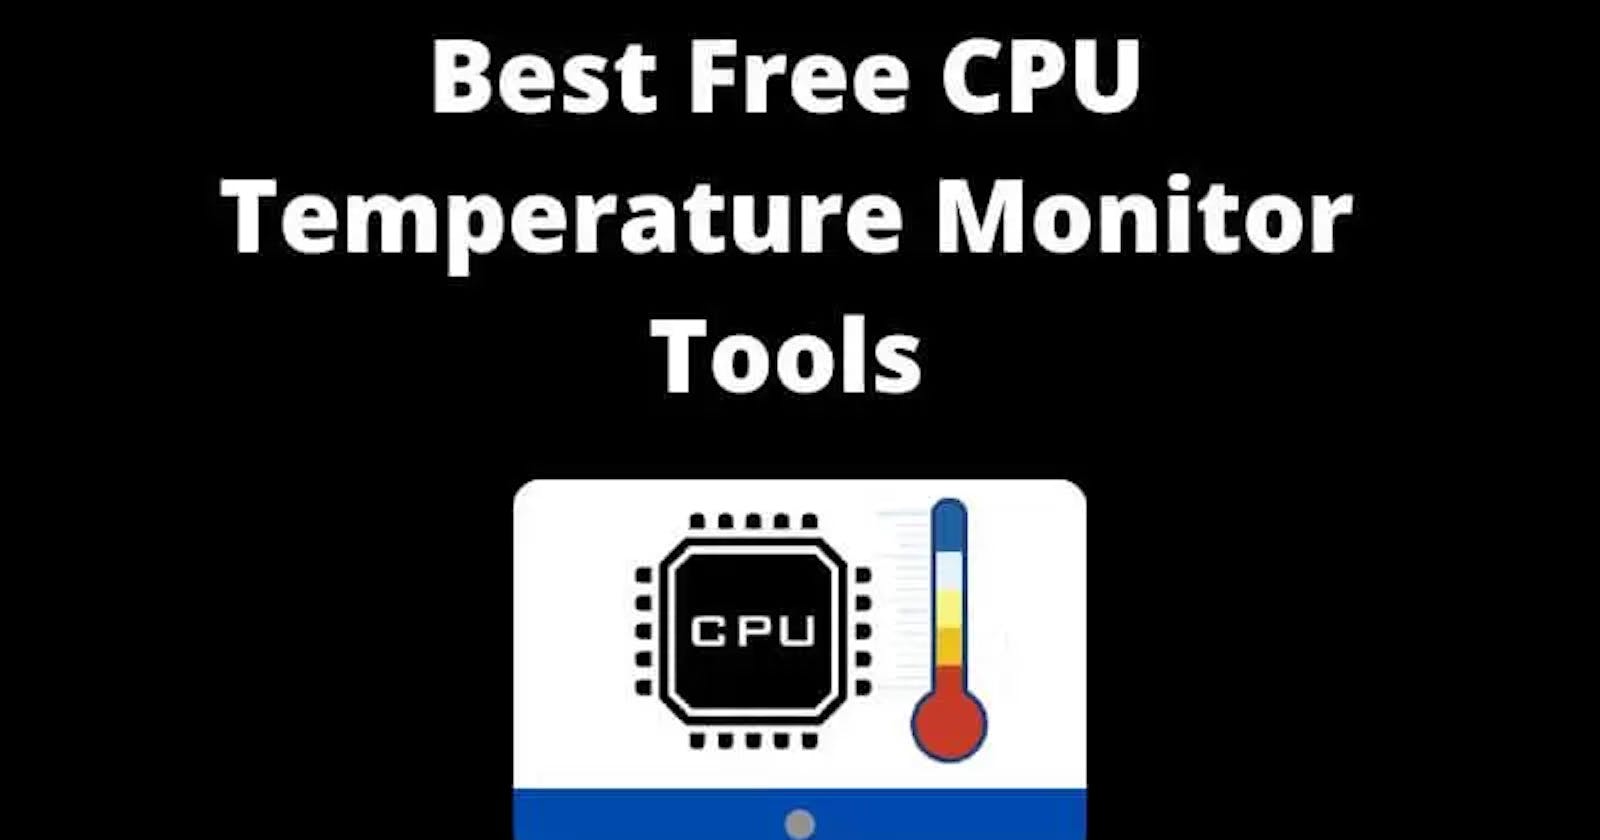 9 Best Free CPU Temperature Monitor Tools